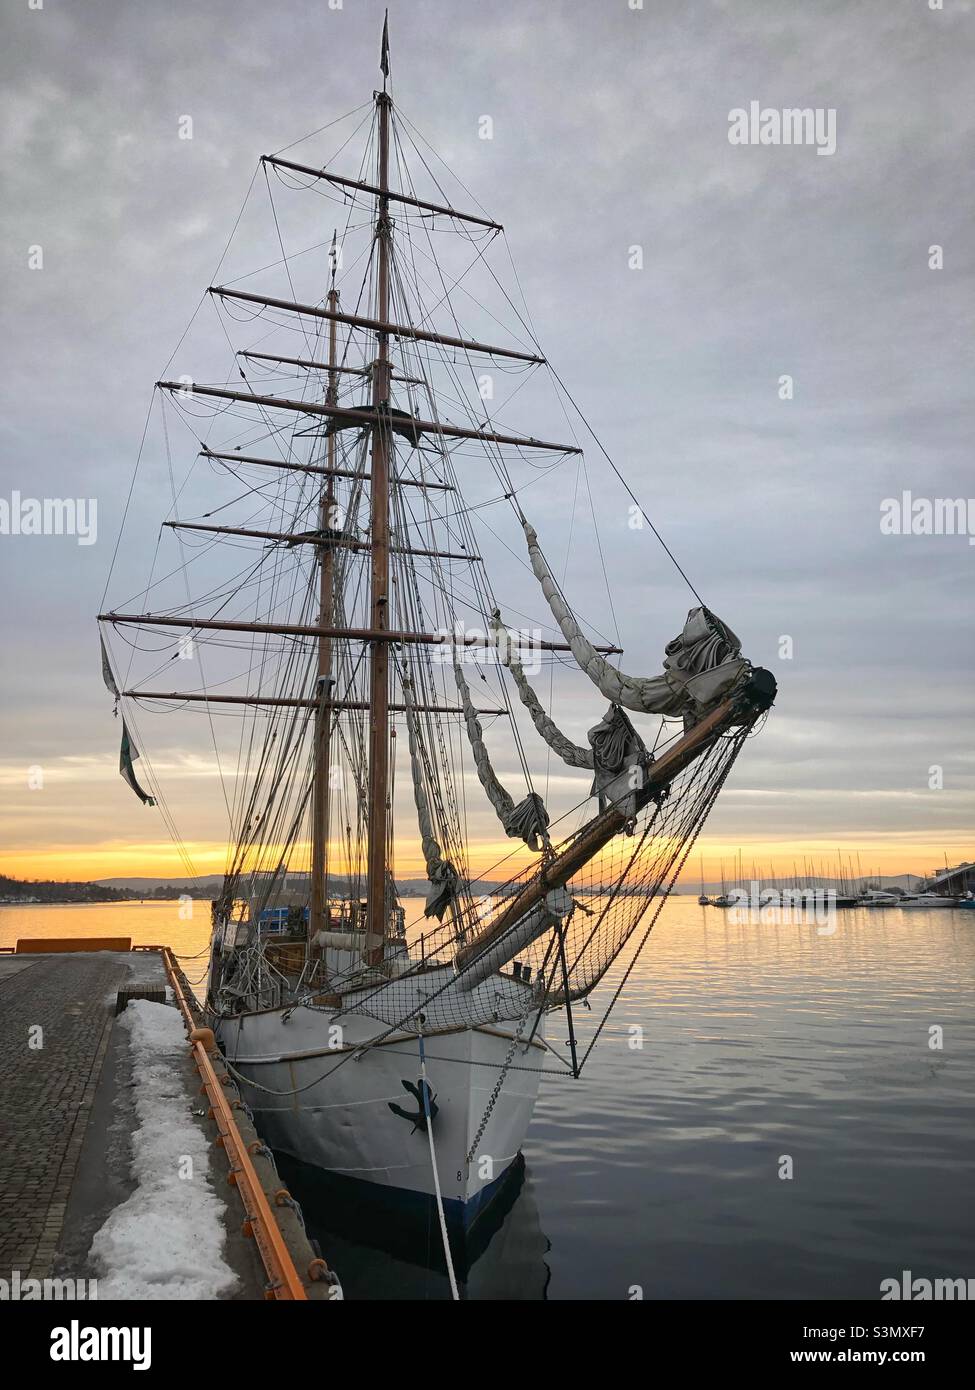 “Legend” es un barco de vela y motor construido para la pesca y el comercio en 1915 en Schweningen, Holanda, y ahora es un barco de aventura con sede en Oslo, Noruega. Foto de stock